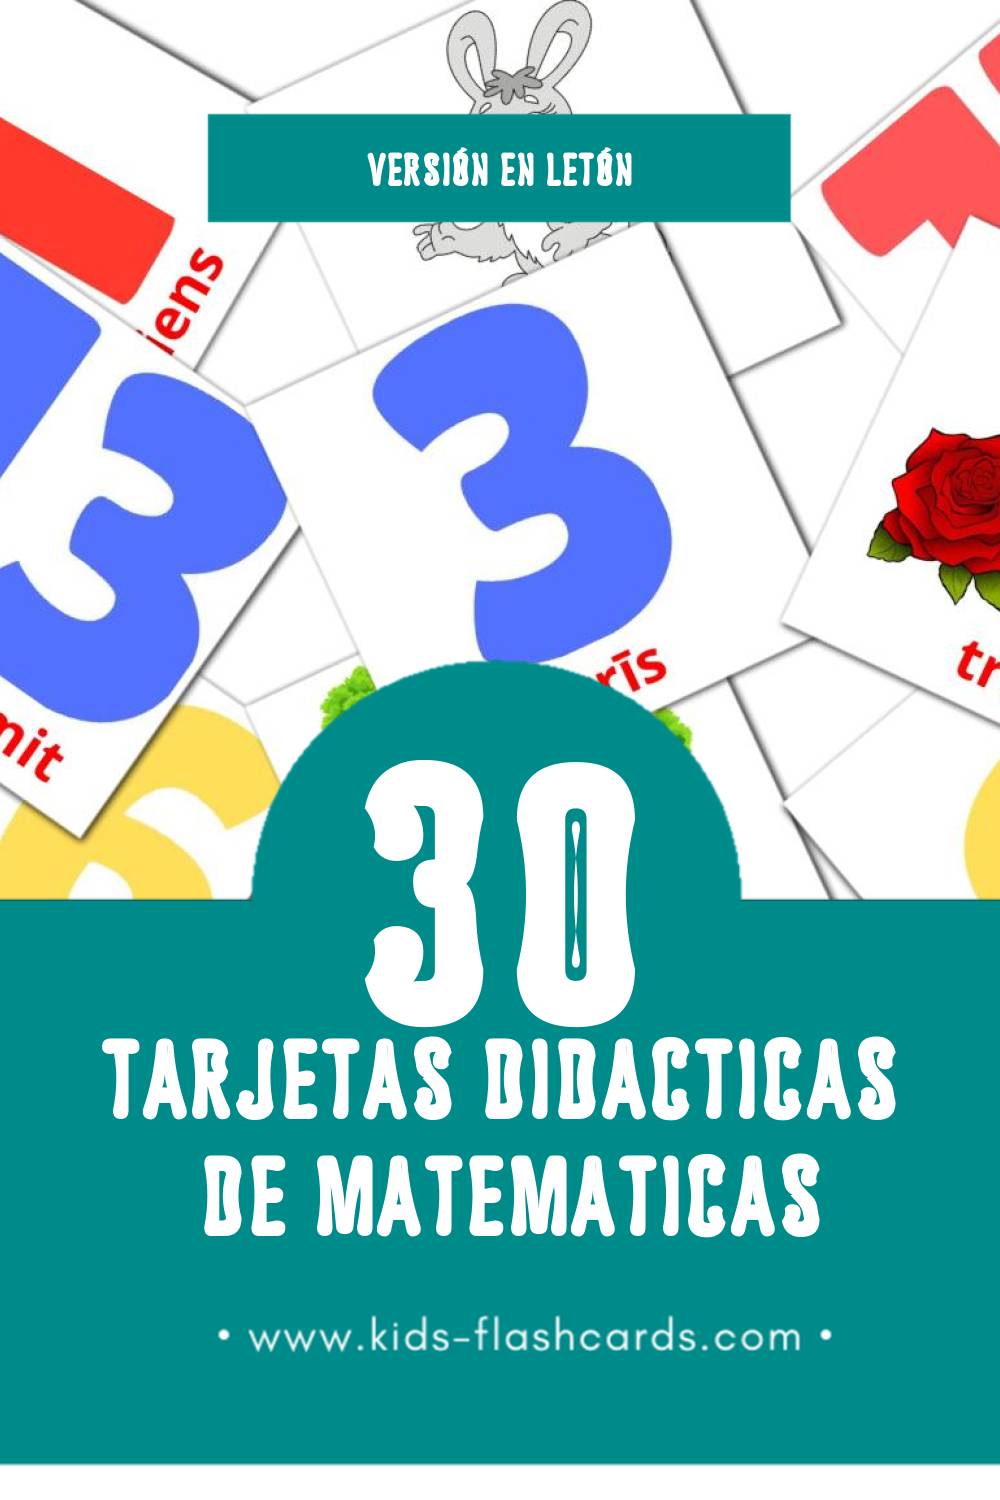 Tarjetas visuales de Matemātika para niños pequeños (30 tarjetas en Letón)